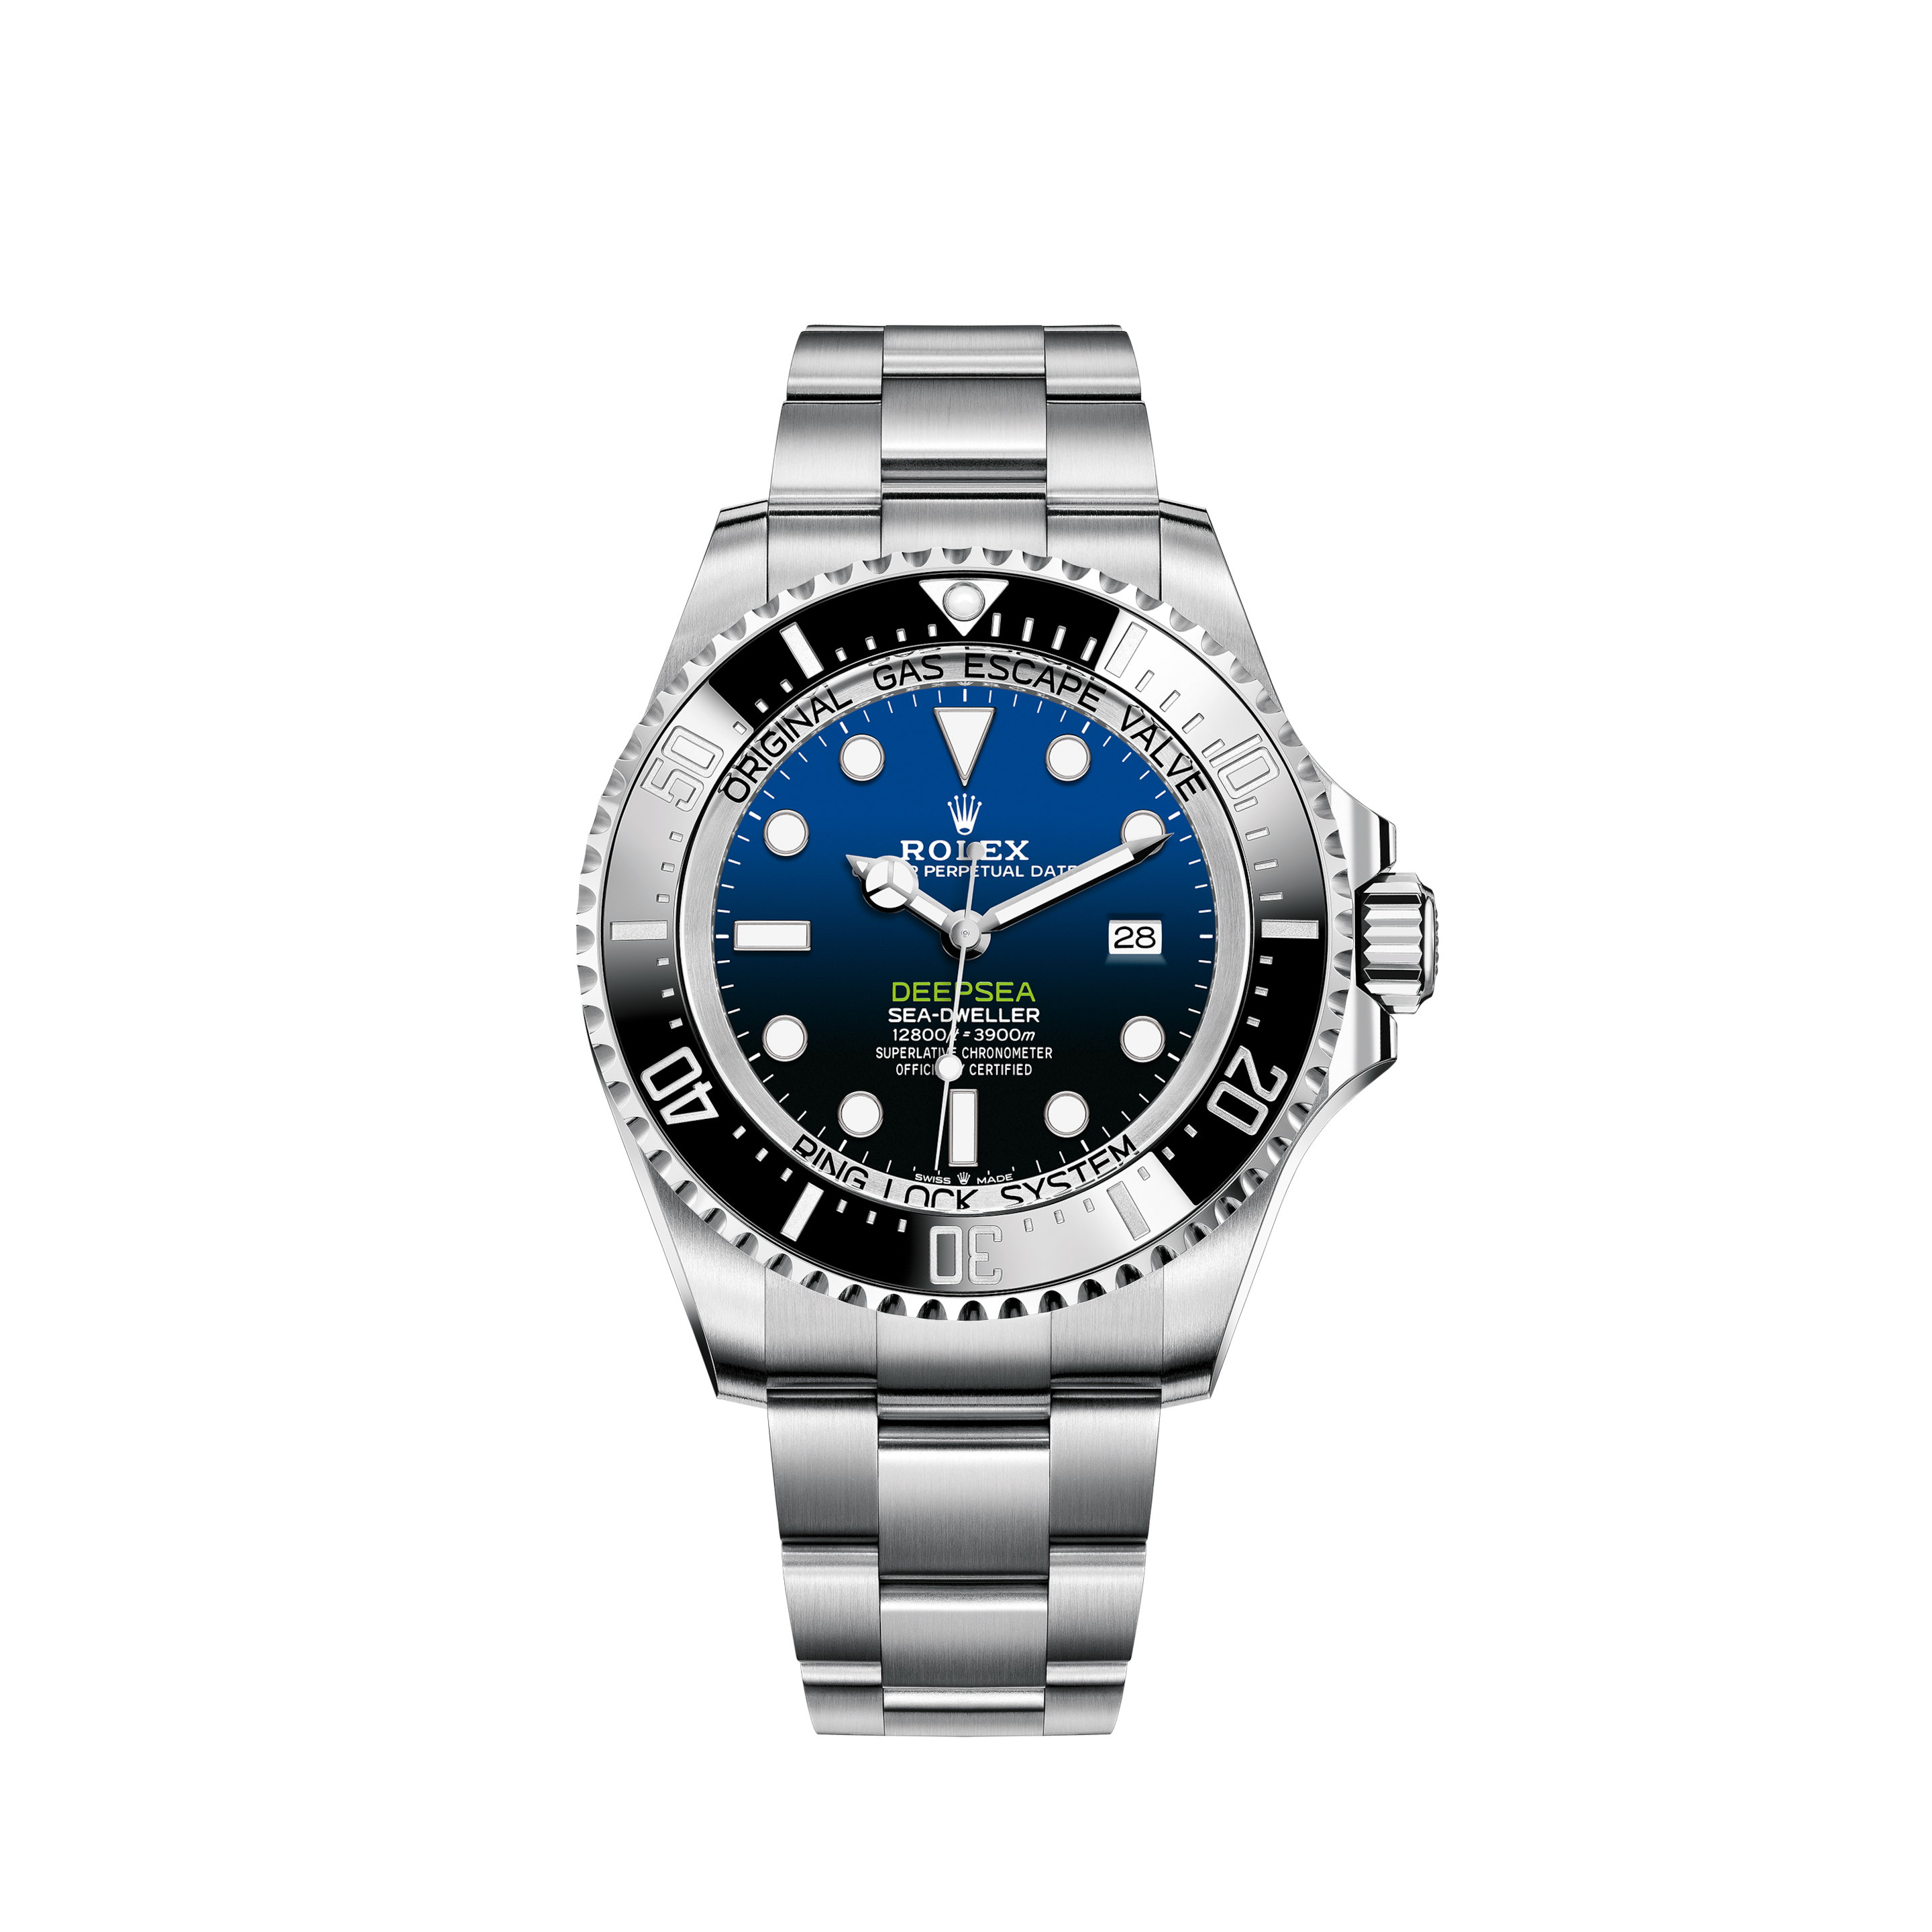 Rolex Rolex ROLEX Submariner Non-Date 14060M OH Y Black Men's Watch Self-Winding BlackRolex Rolex ROLEX Submariner Vintage Antique 5513 Black Dial Watch Men's Watches